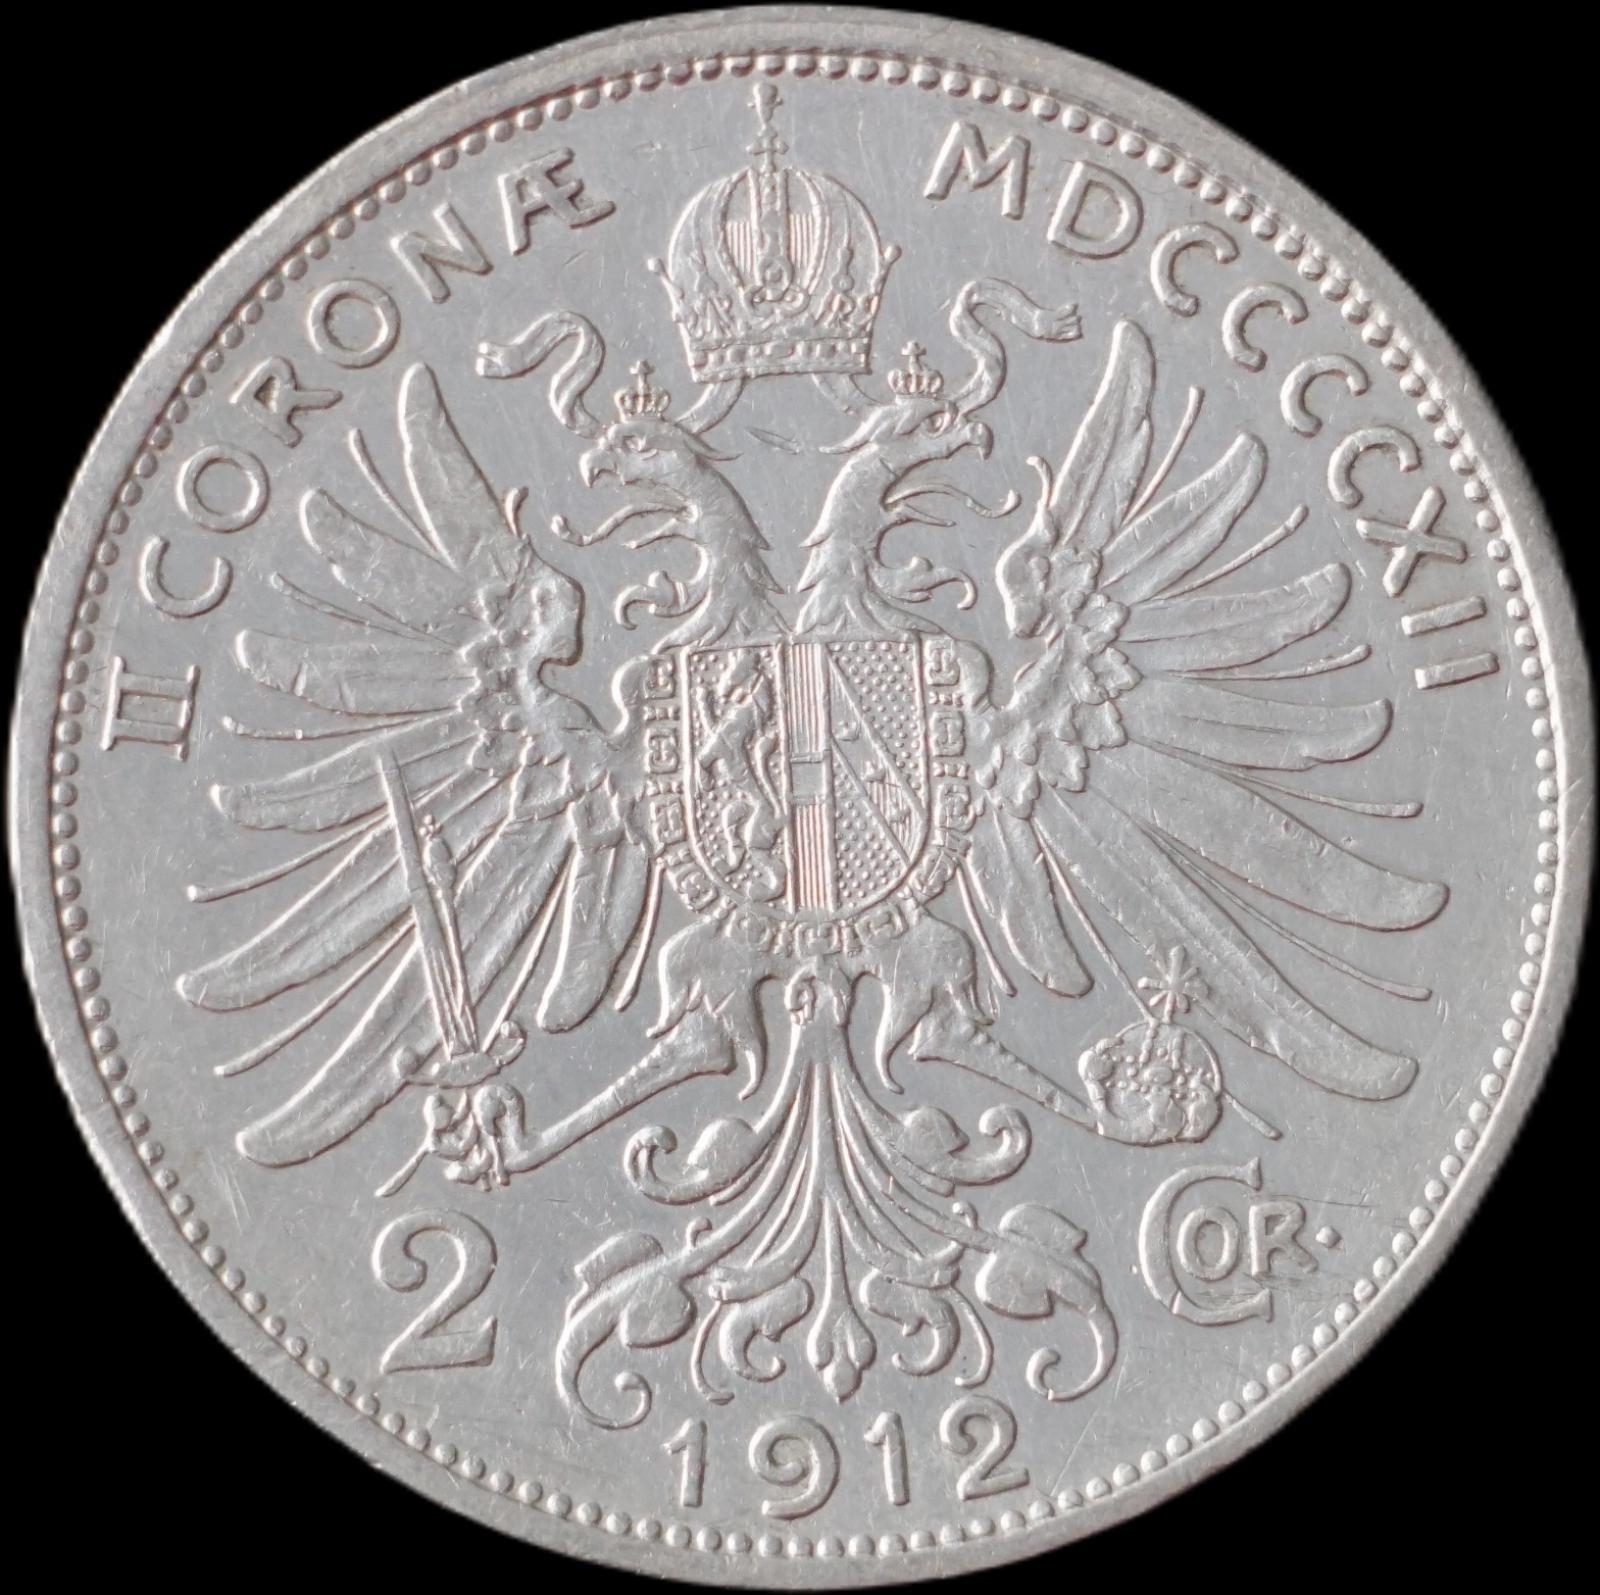 Rakúsko-Uhorsko - 2 koruna 1912 - strieborná minca - Numizmatika